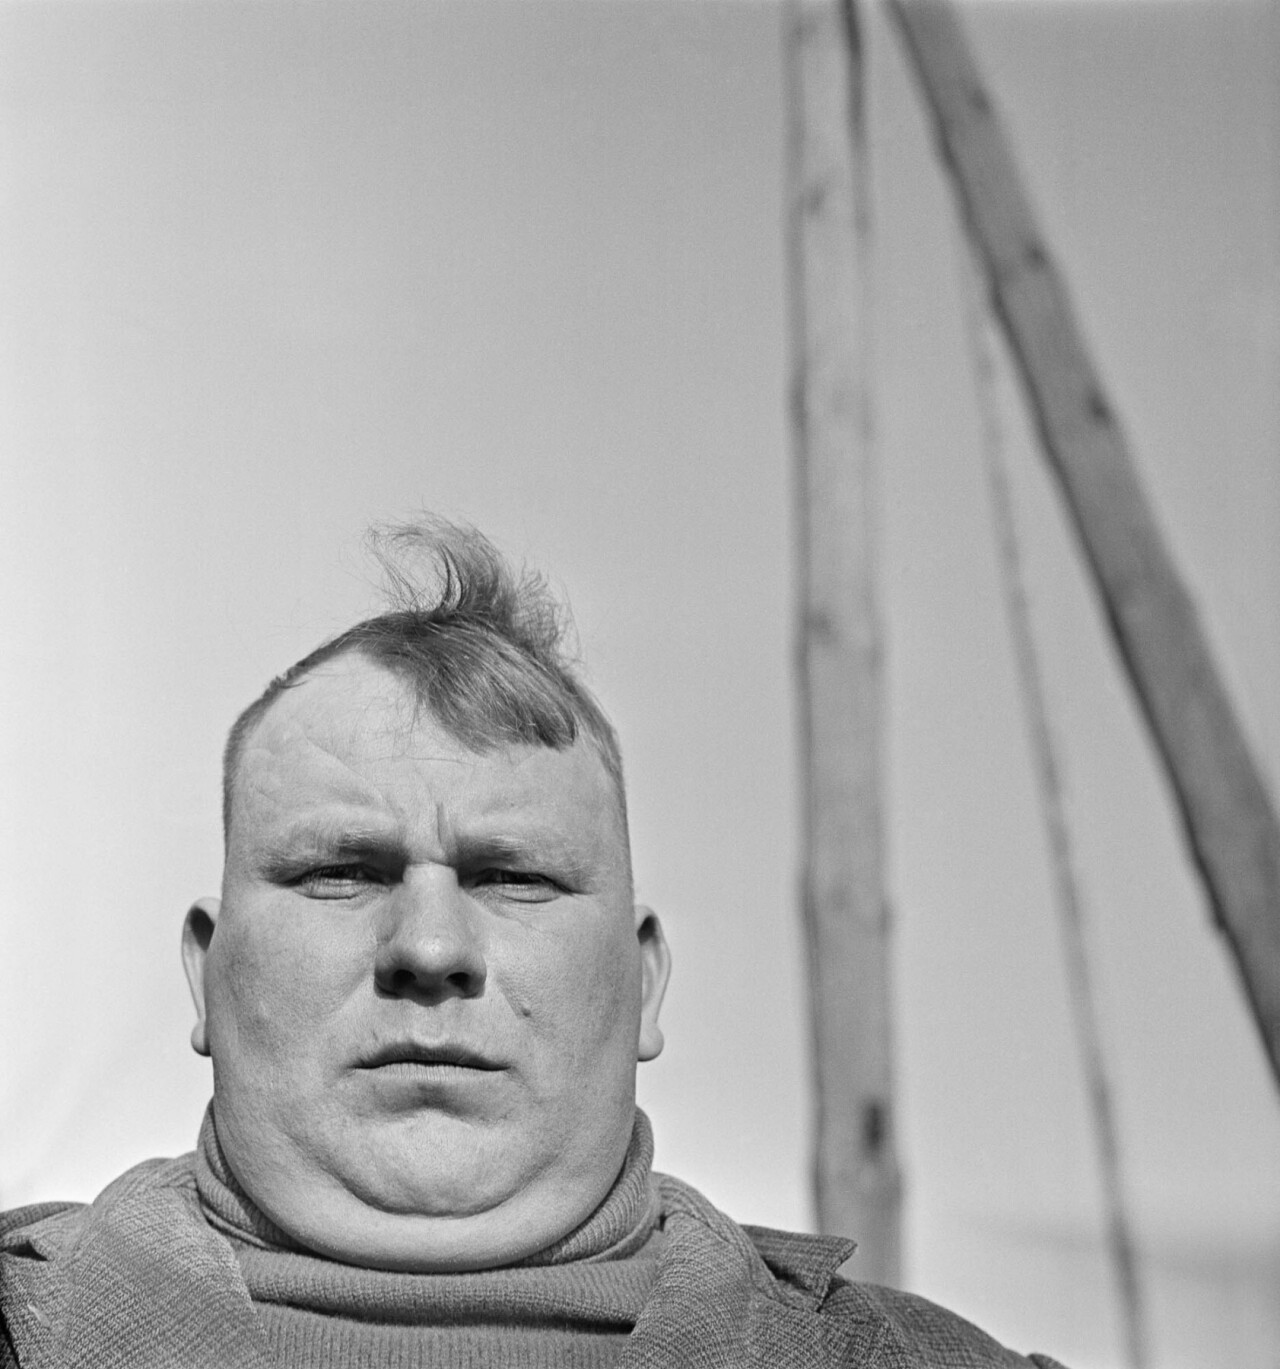 Белорусский рабочий, 1980 год, фотограф Антанас Суткус